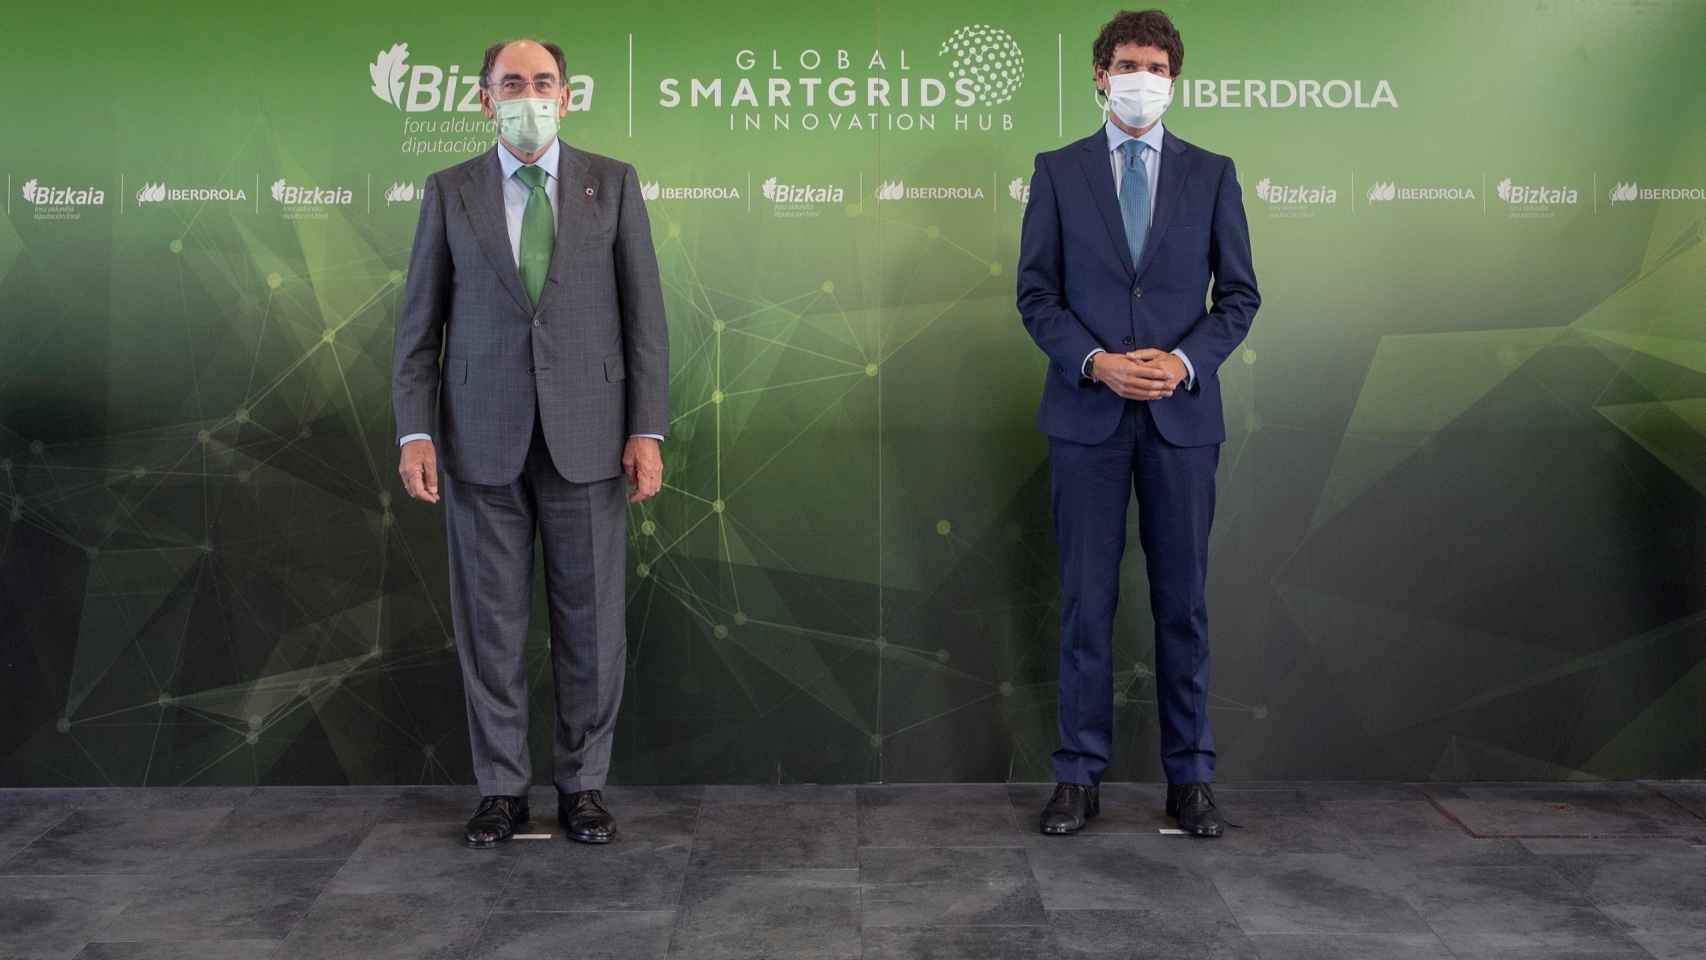 Iberdrola sitúa el centro mundial de innovación de redes inteligentes en España